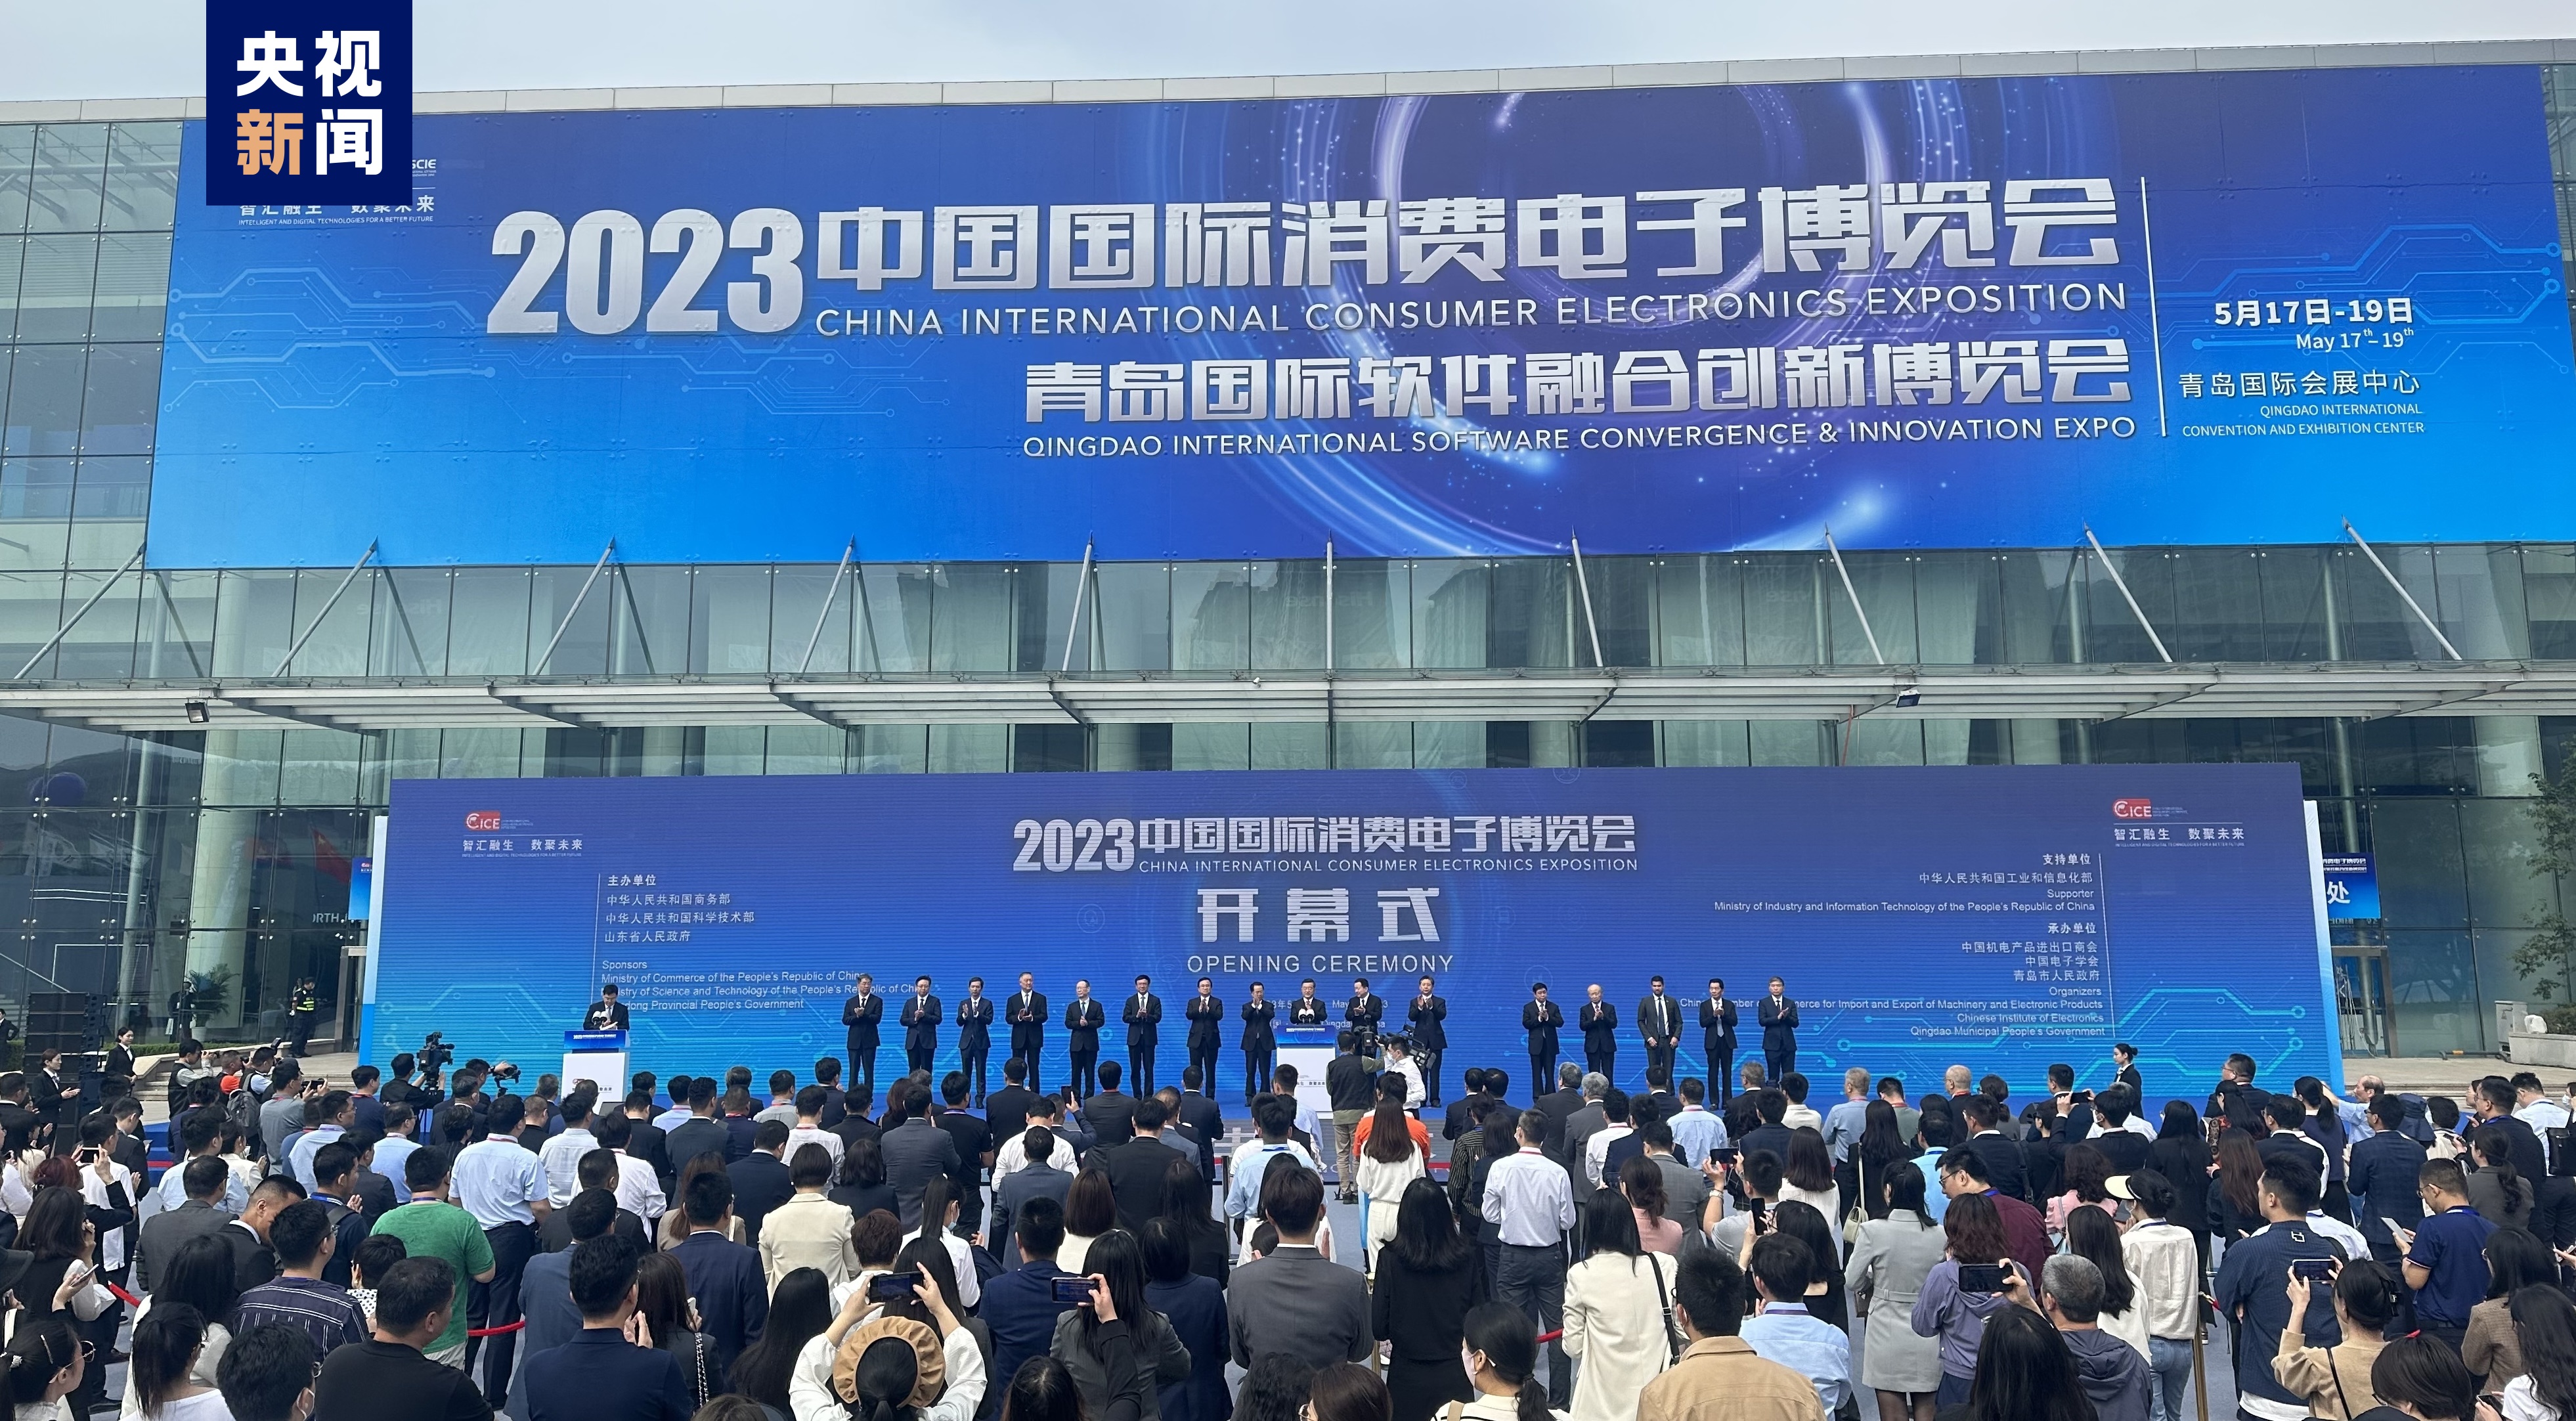 2023中国科学新突破上天入海探月各项创新突破振奋人心！